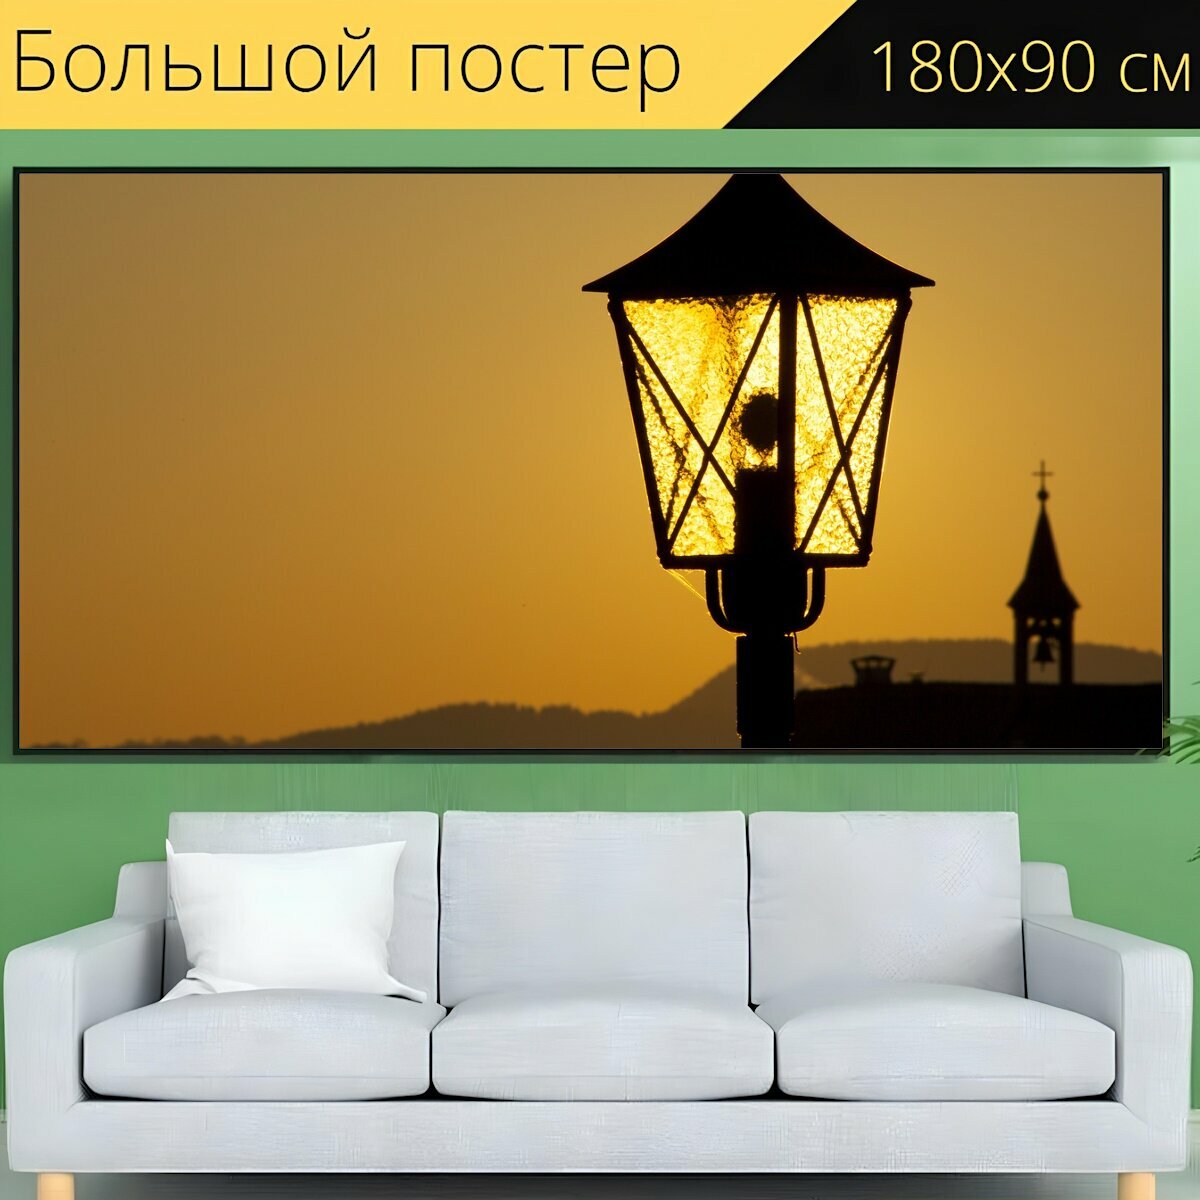 Большой постер "Фонарь, свет, напольная лампа" 180 x 90 см. для интерьера